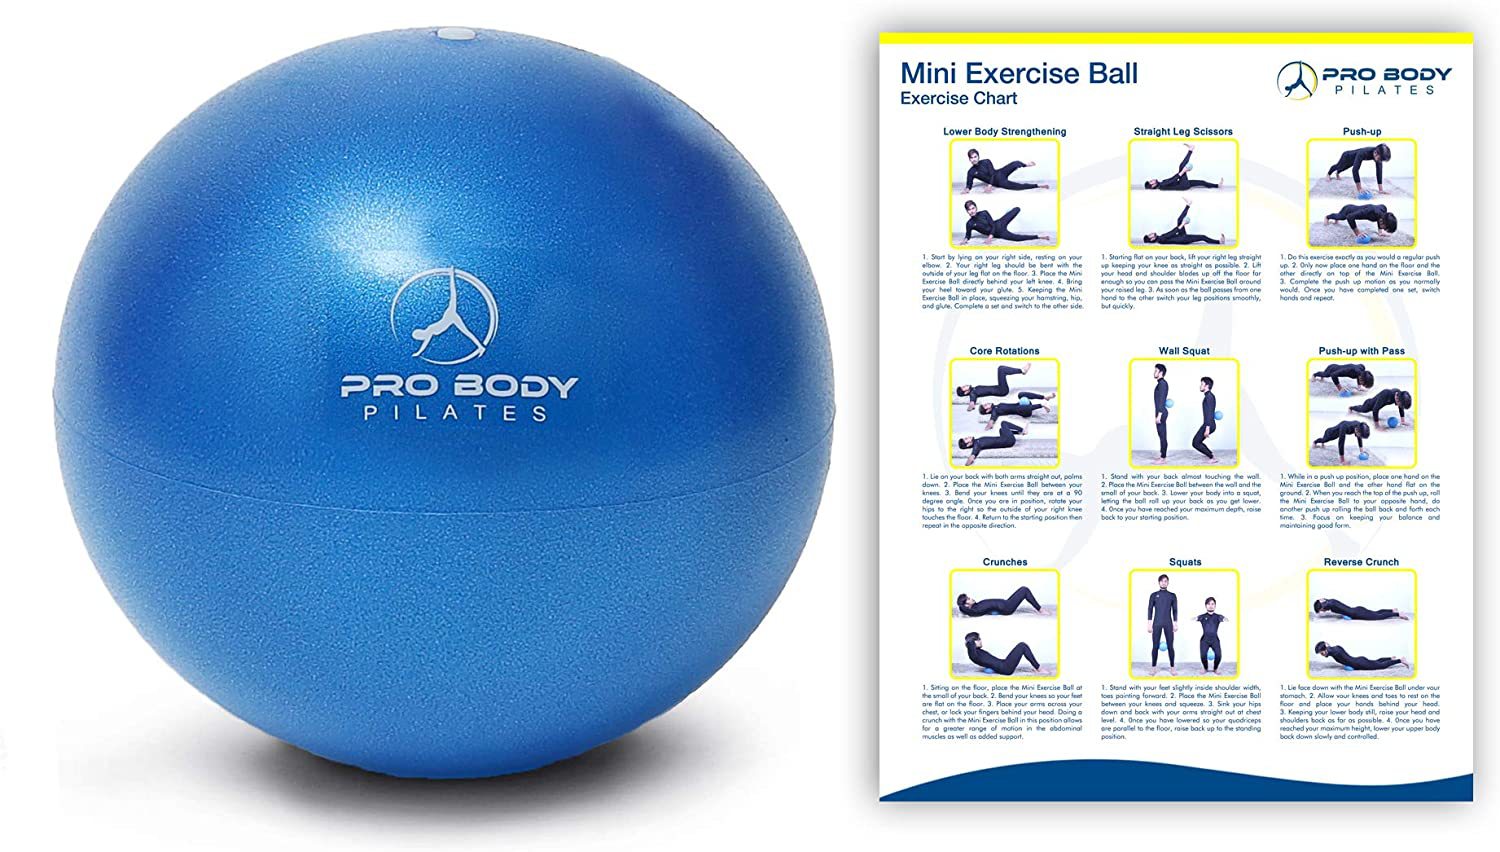  ProBody Pilates Ball Exercise Ball Yoga Ball, Multiple